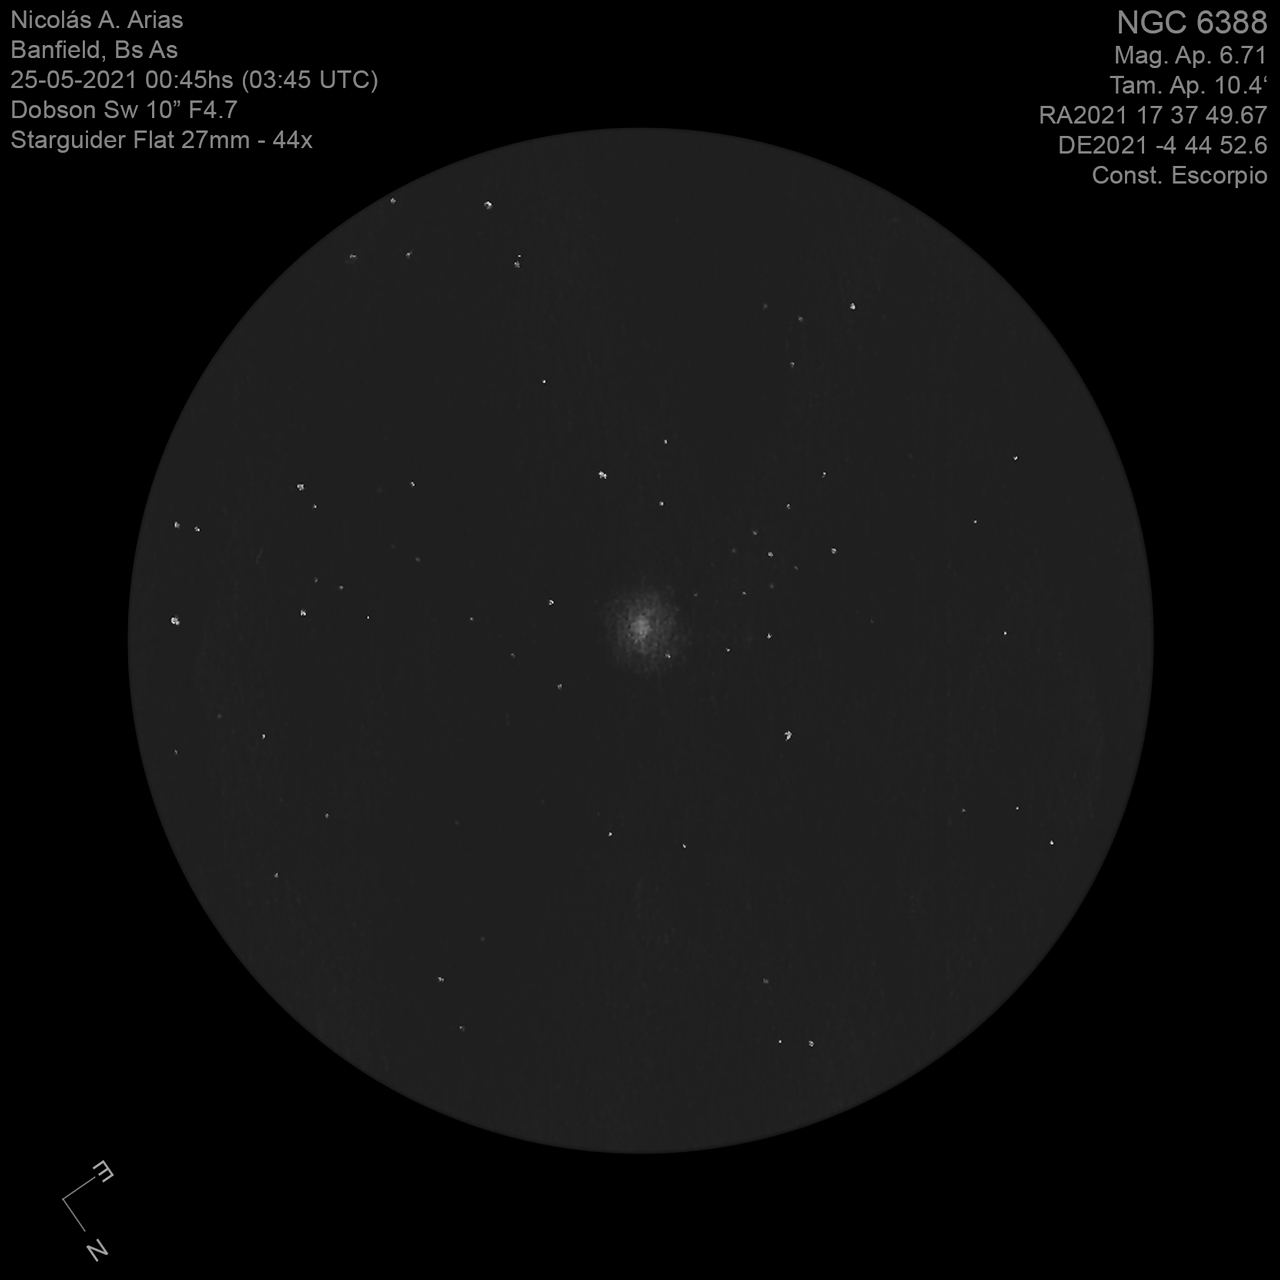 NGC6388-25-5-2021-44x.jpg.1a8158ea1b33c5bcc36b34001381bc6f.jpg